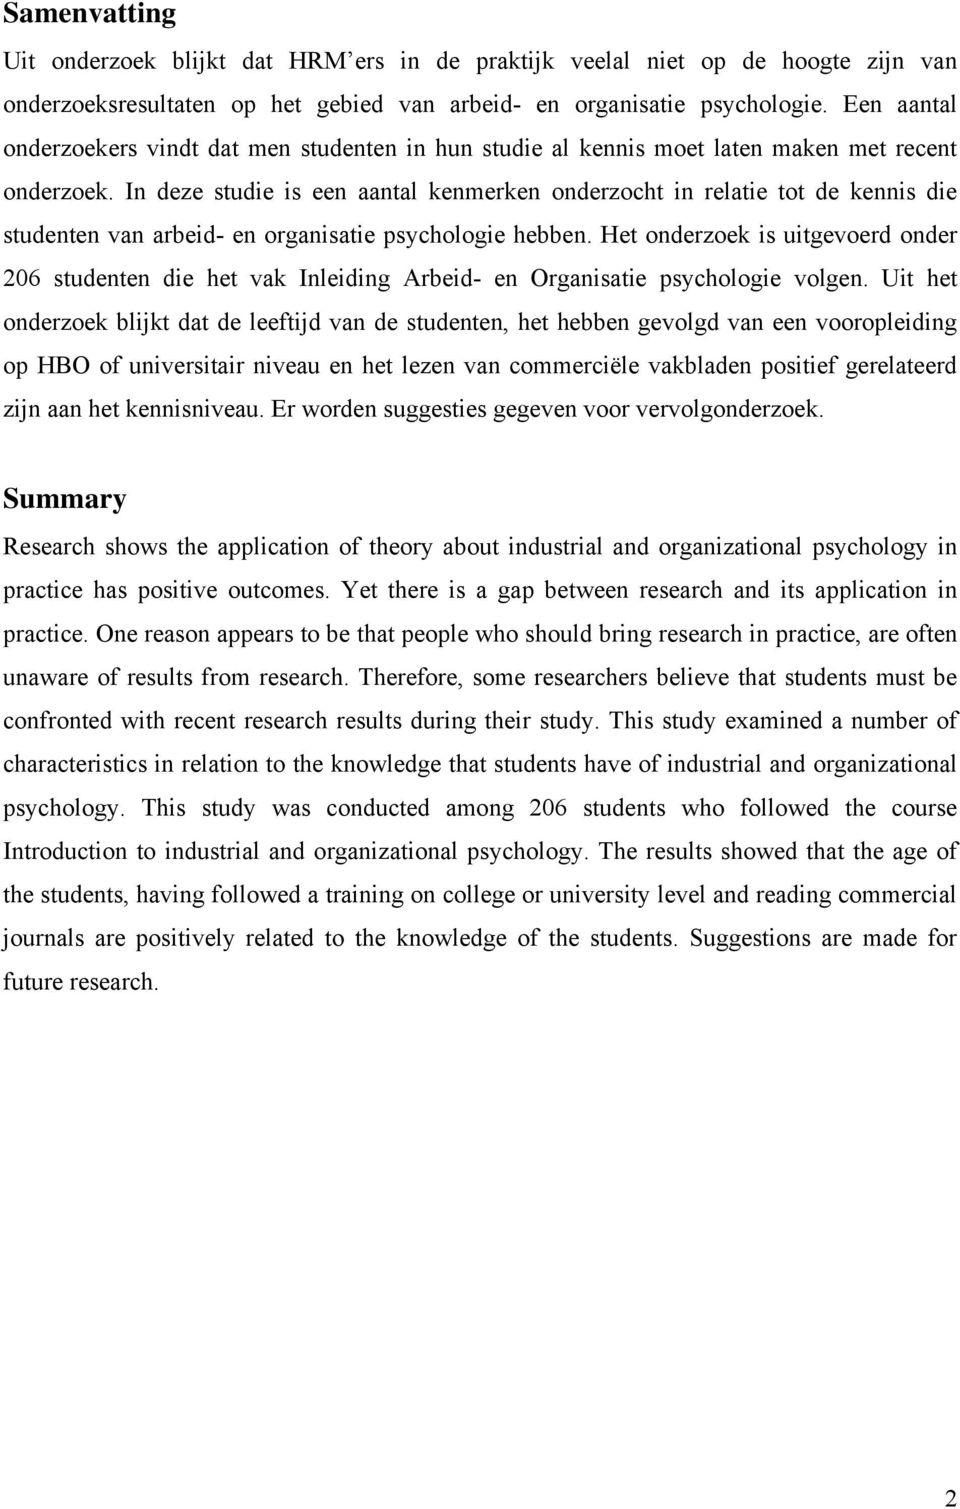 In deze studie is een aantal kenmerken onderzocht in relatie tot de kennis die studenten van arbeid- en organisatie psychologie hebben.